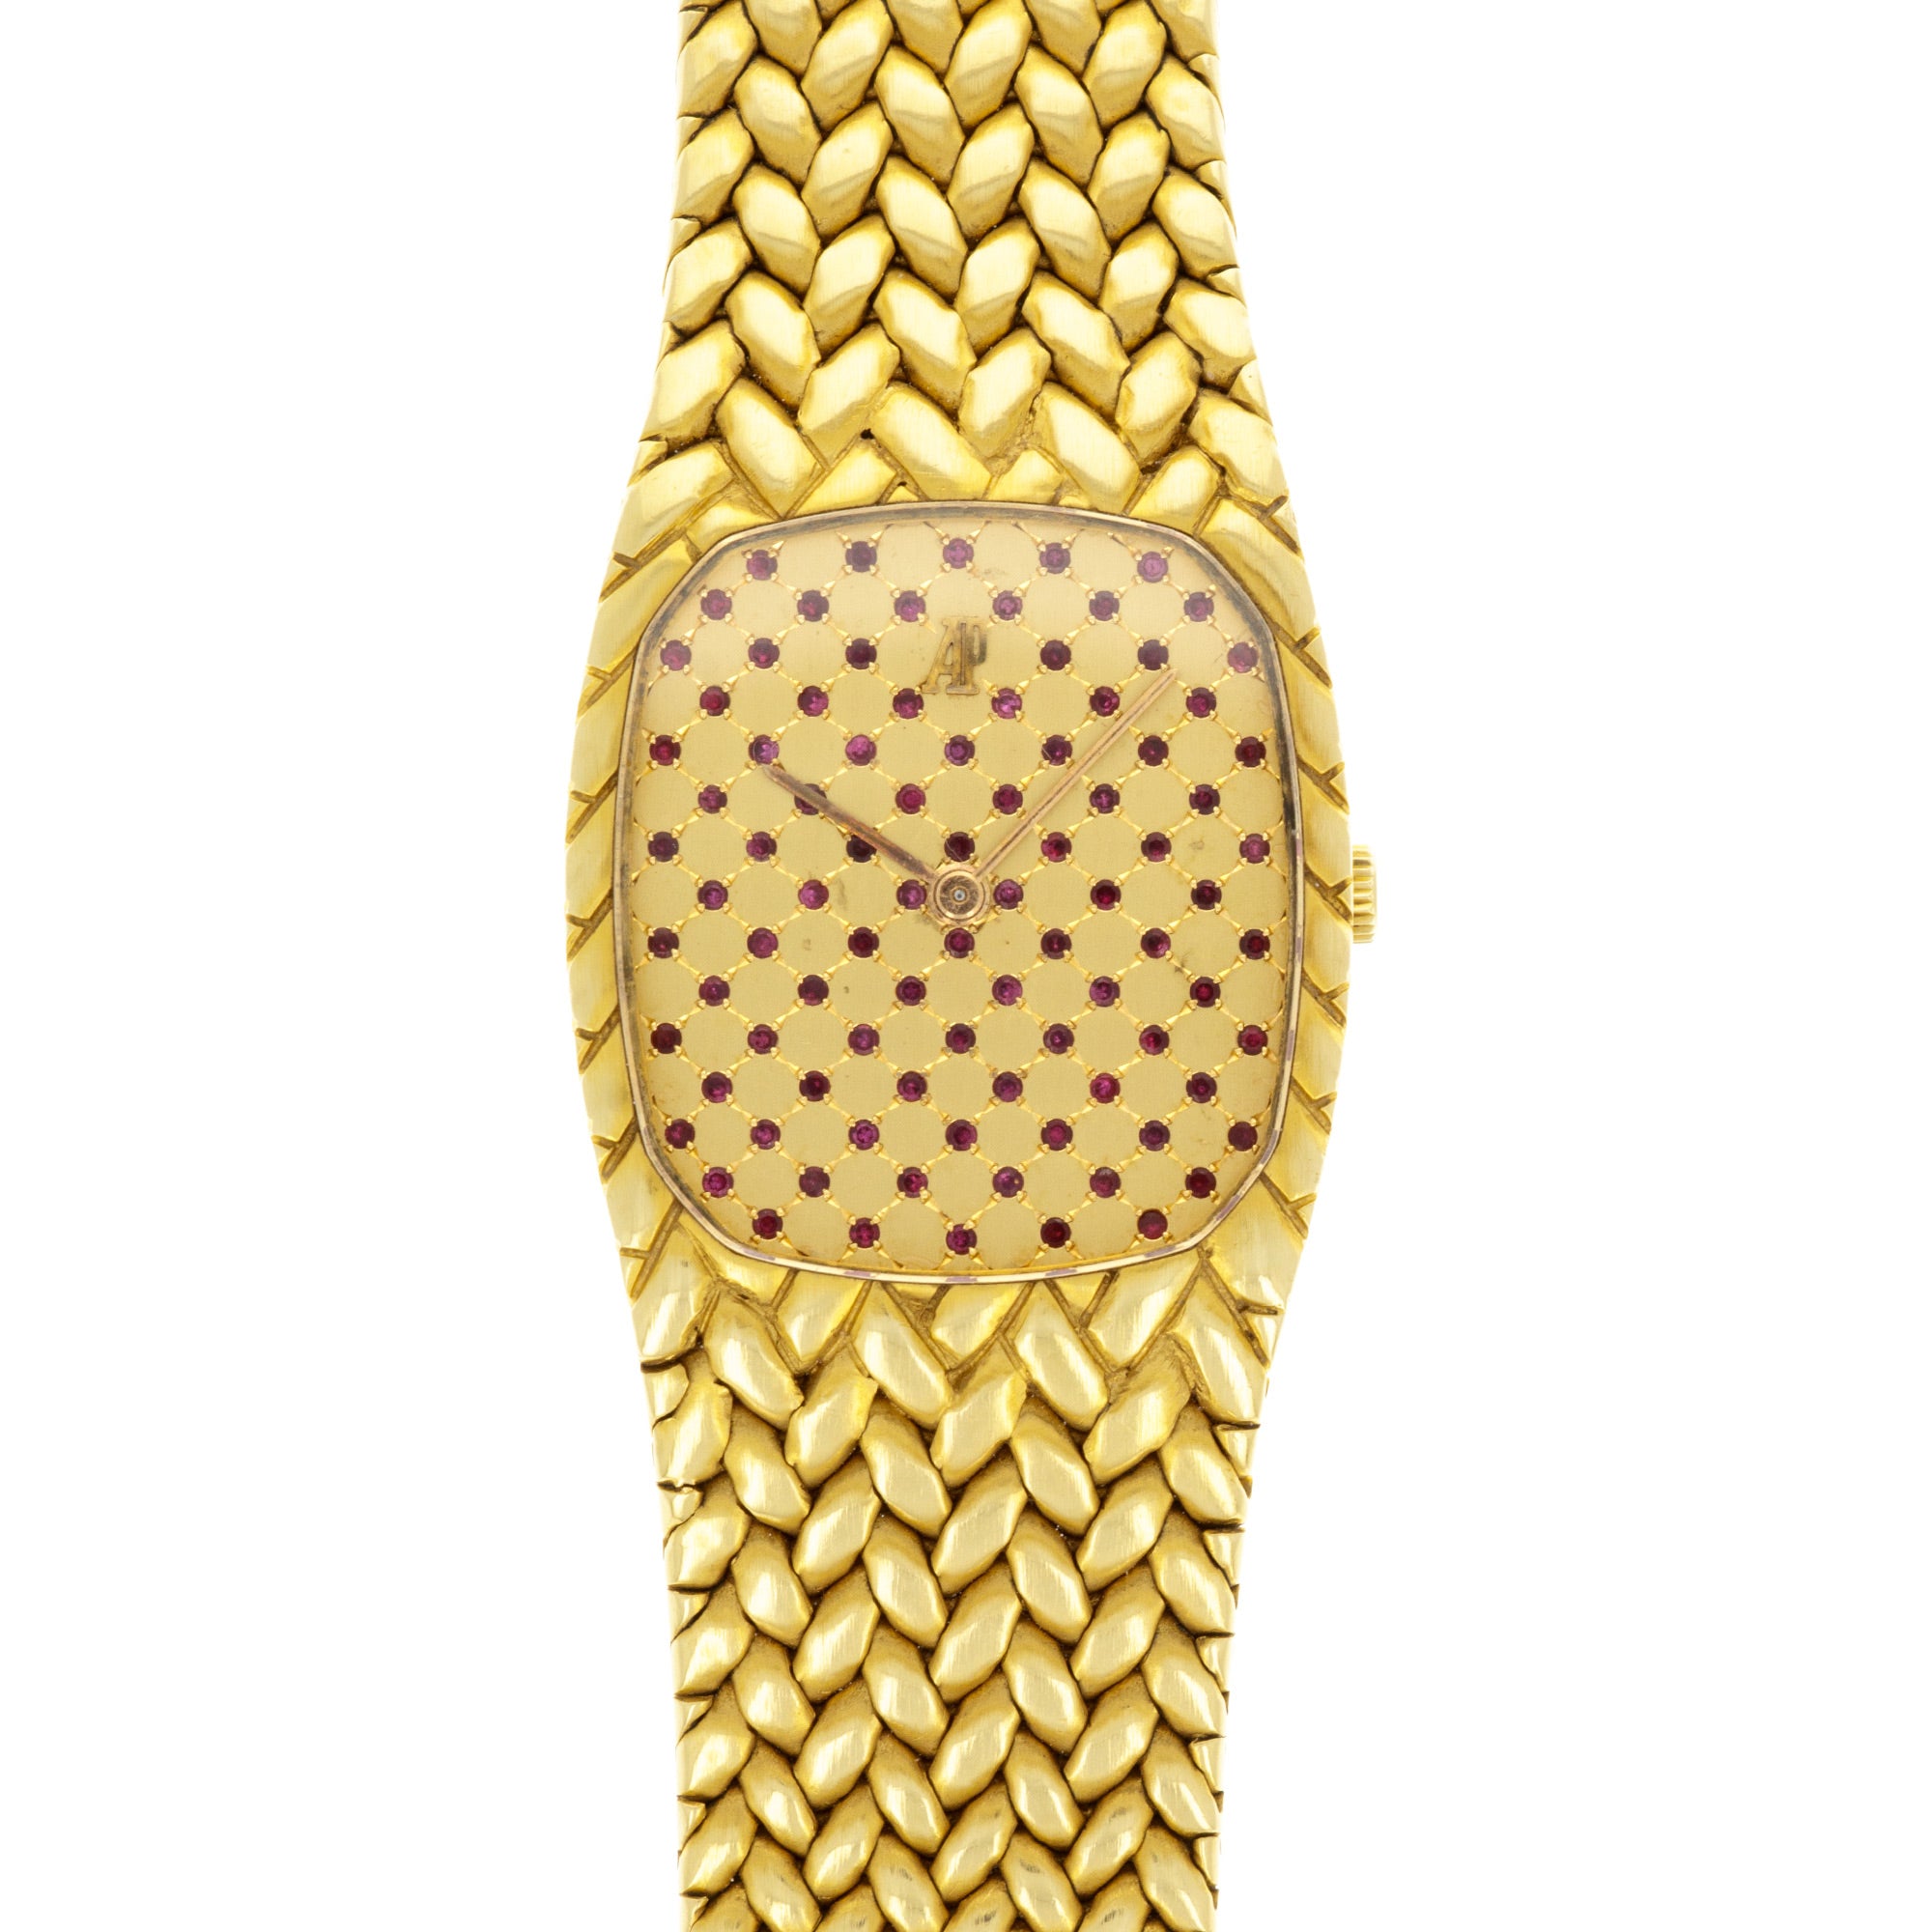 Audemars Piguet - Audemars Piguet Yellow Gold Cobra with Ruby Dial - The Keystone Watches